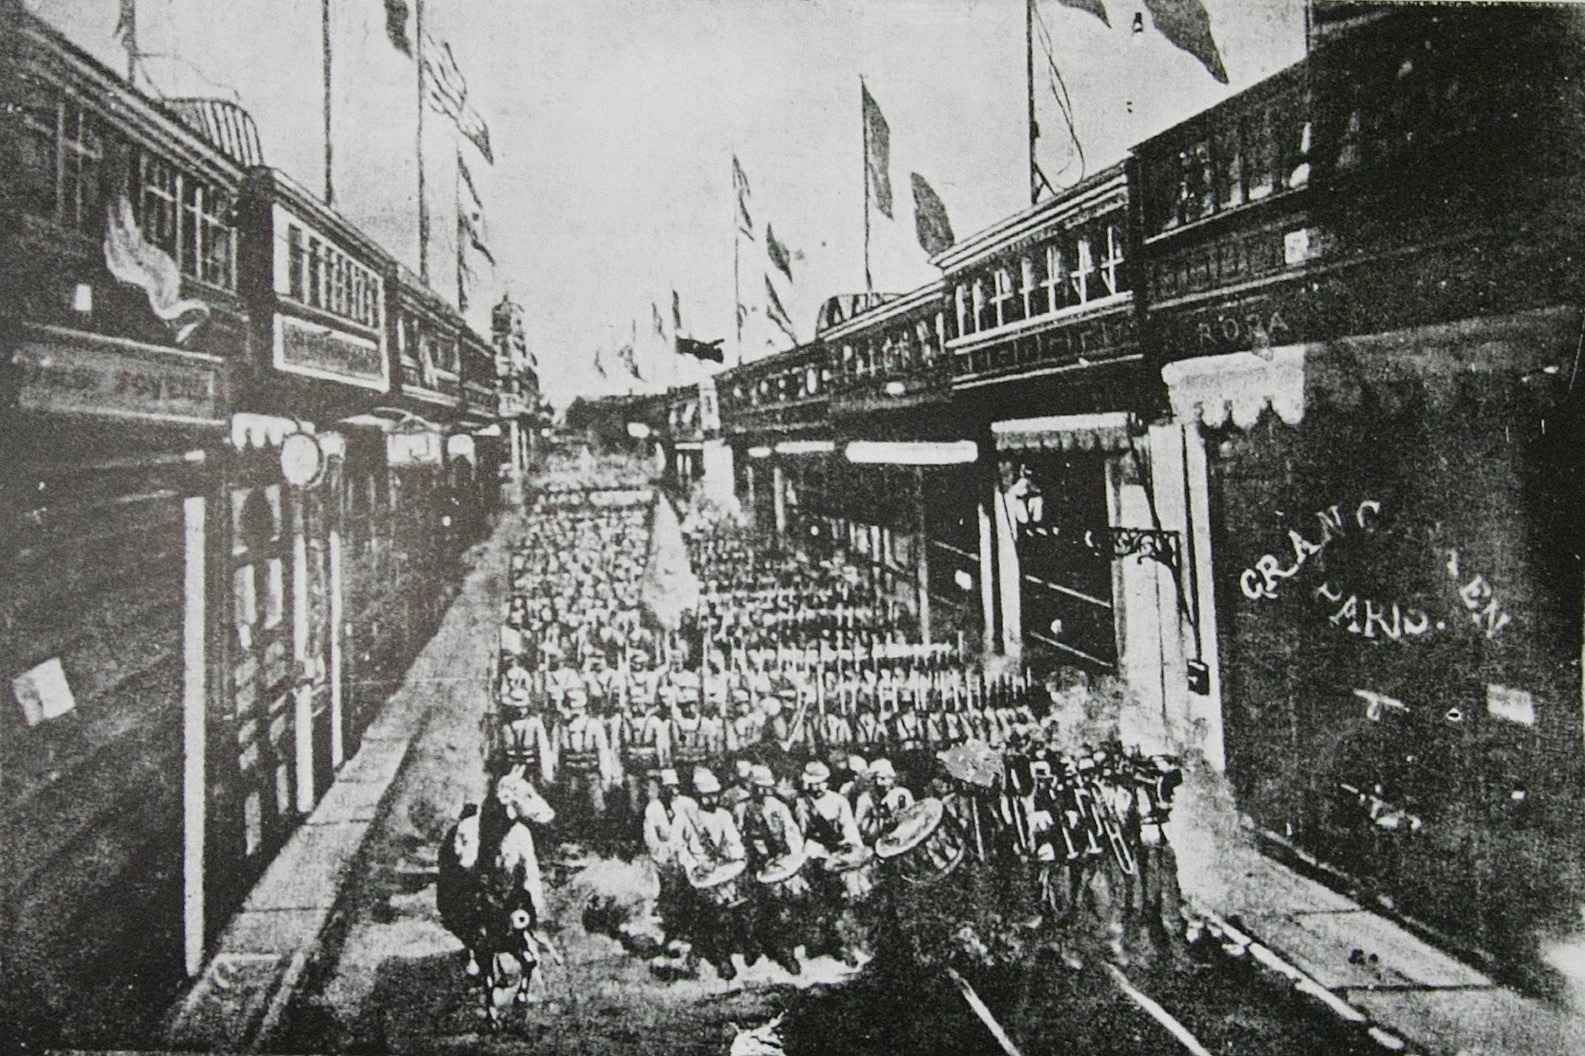 Tropas chilenas ocupan Lima 17 de enero de 1881 Guerra del Pacifico. Chile Perú Bolivia